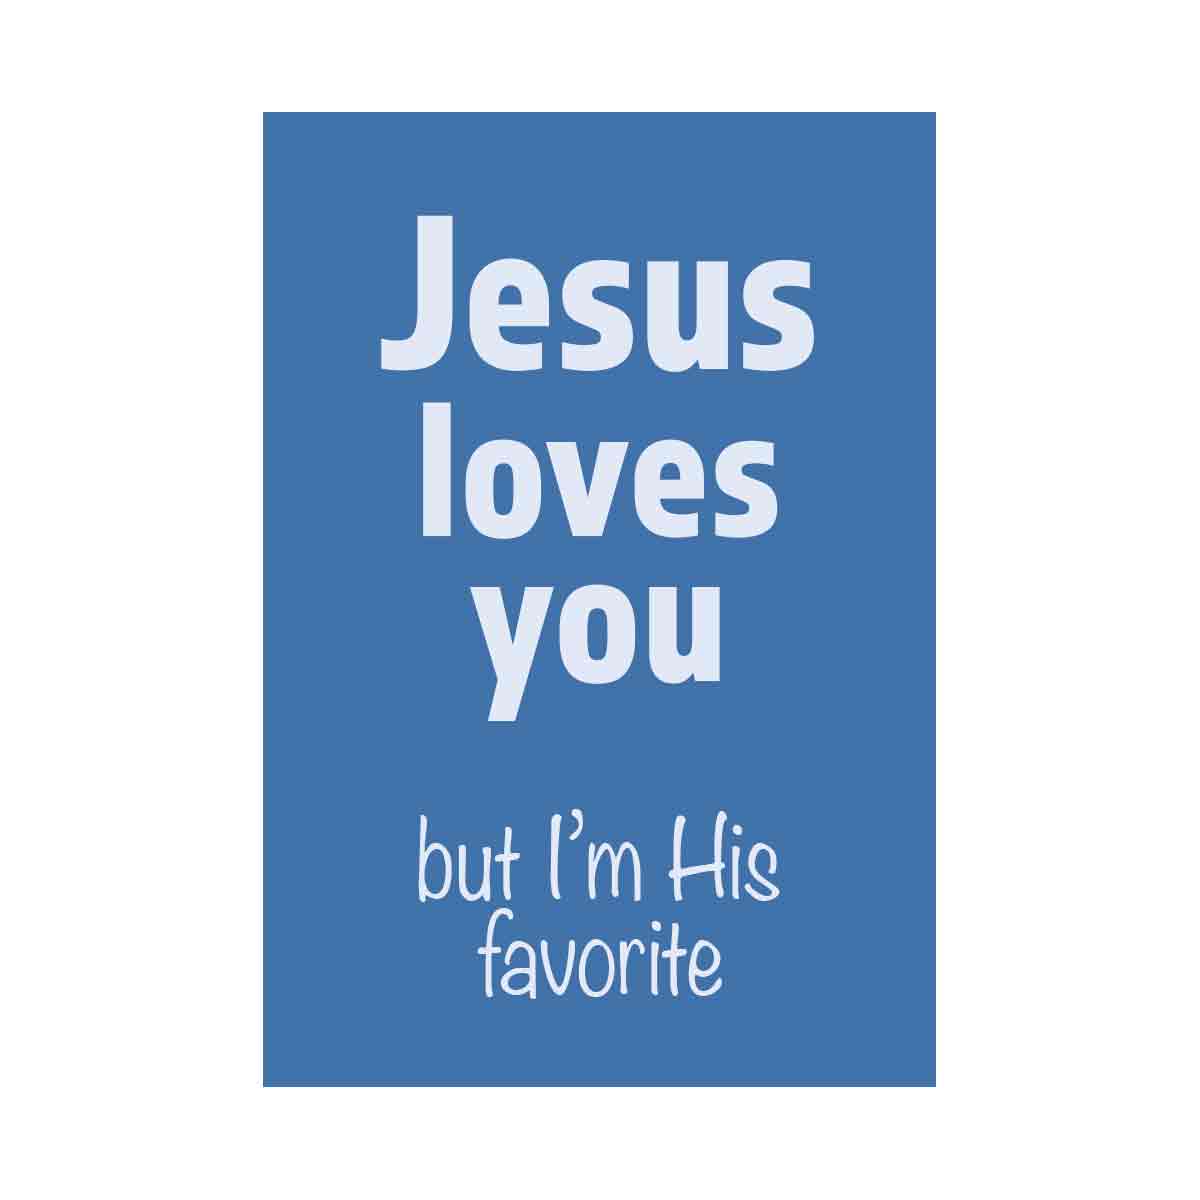 Jesus loves you funny